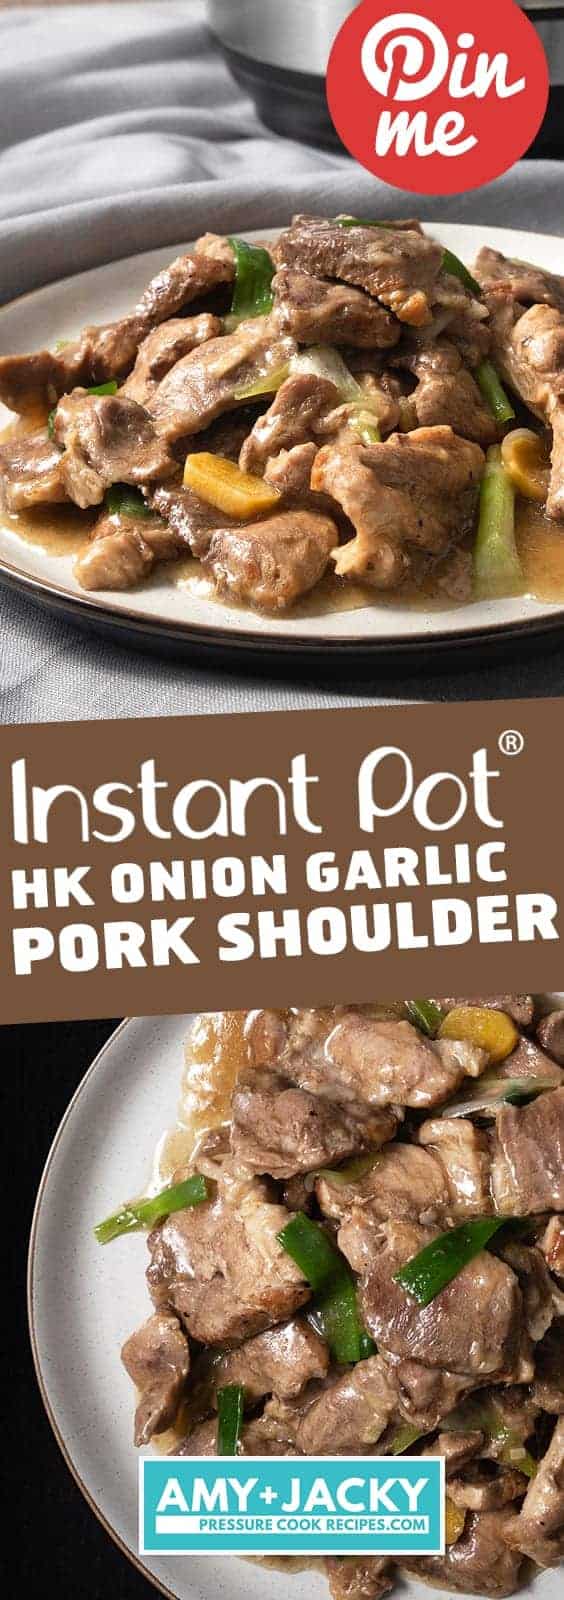 Instant Pot Hk Pork Shoulder Tested By Amy Jacky,Dwarf Hamster Breeds